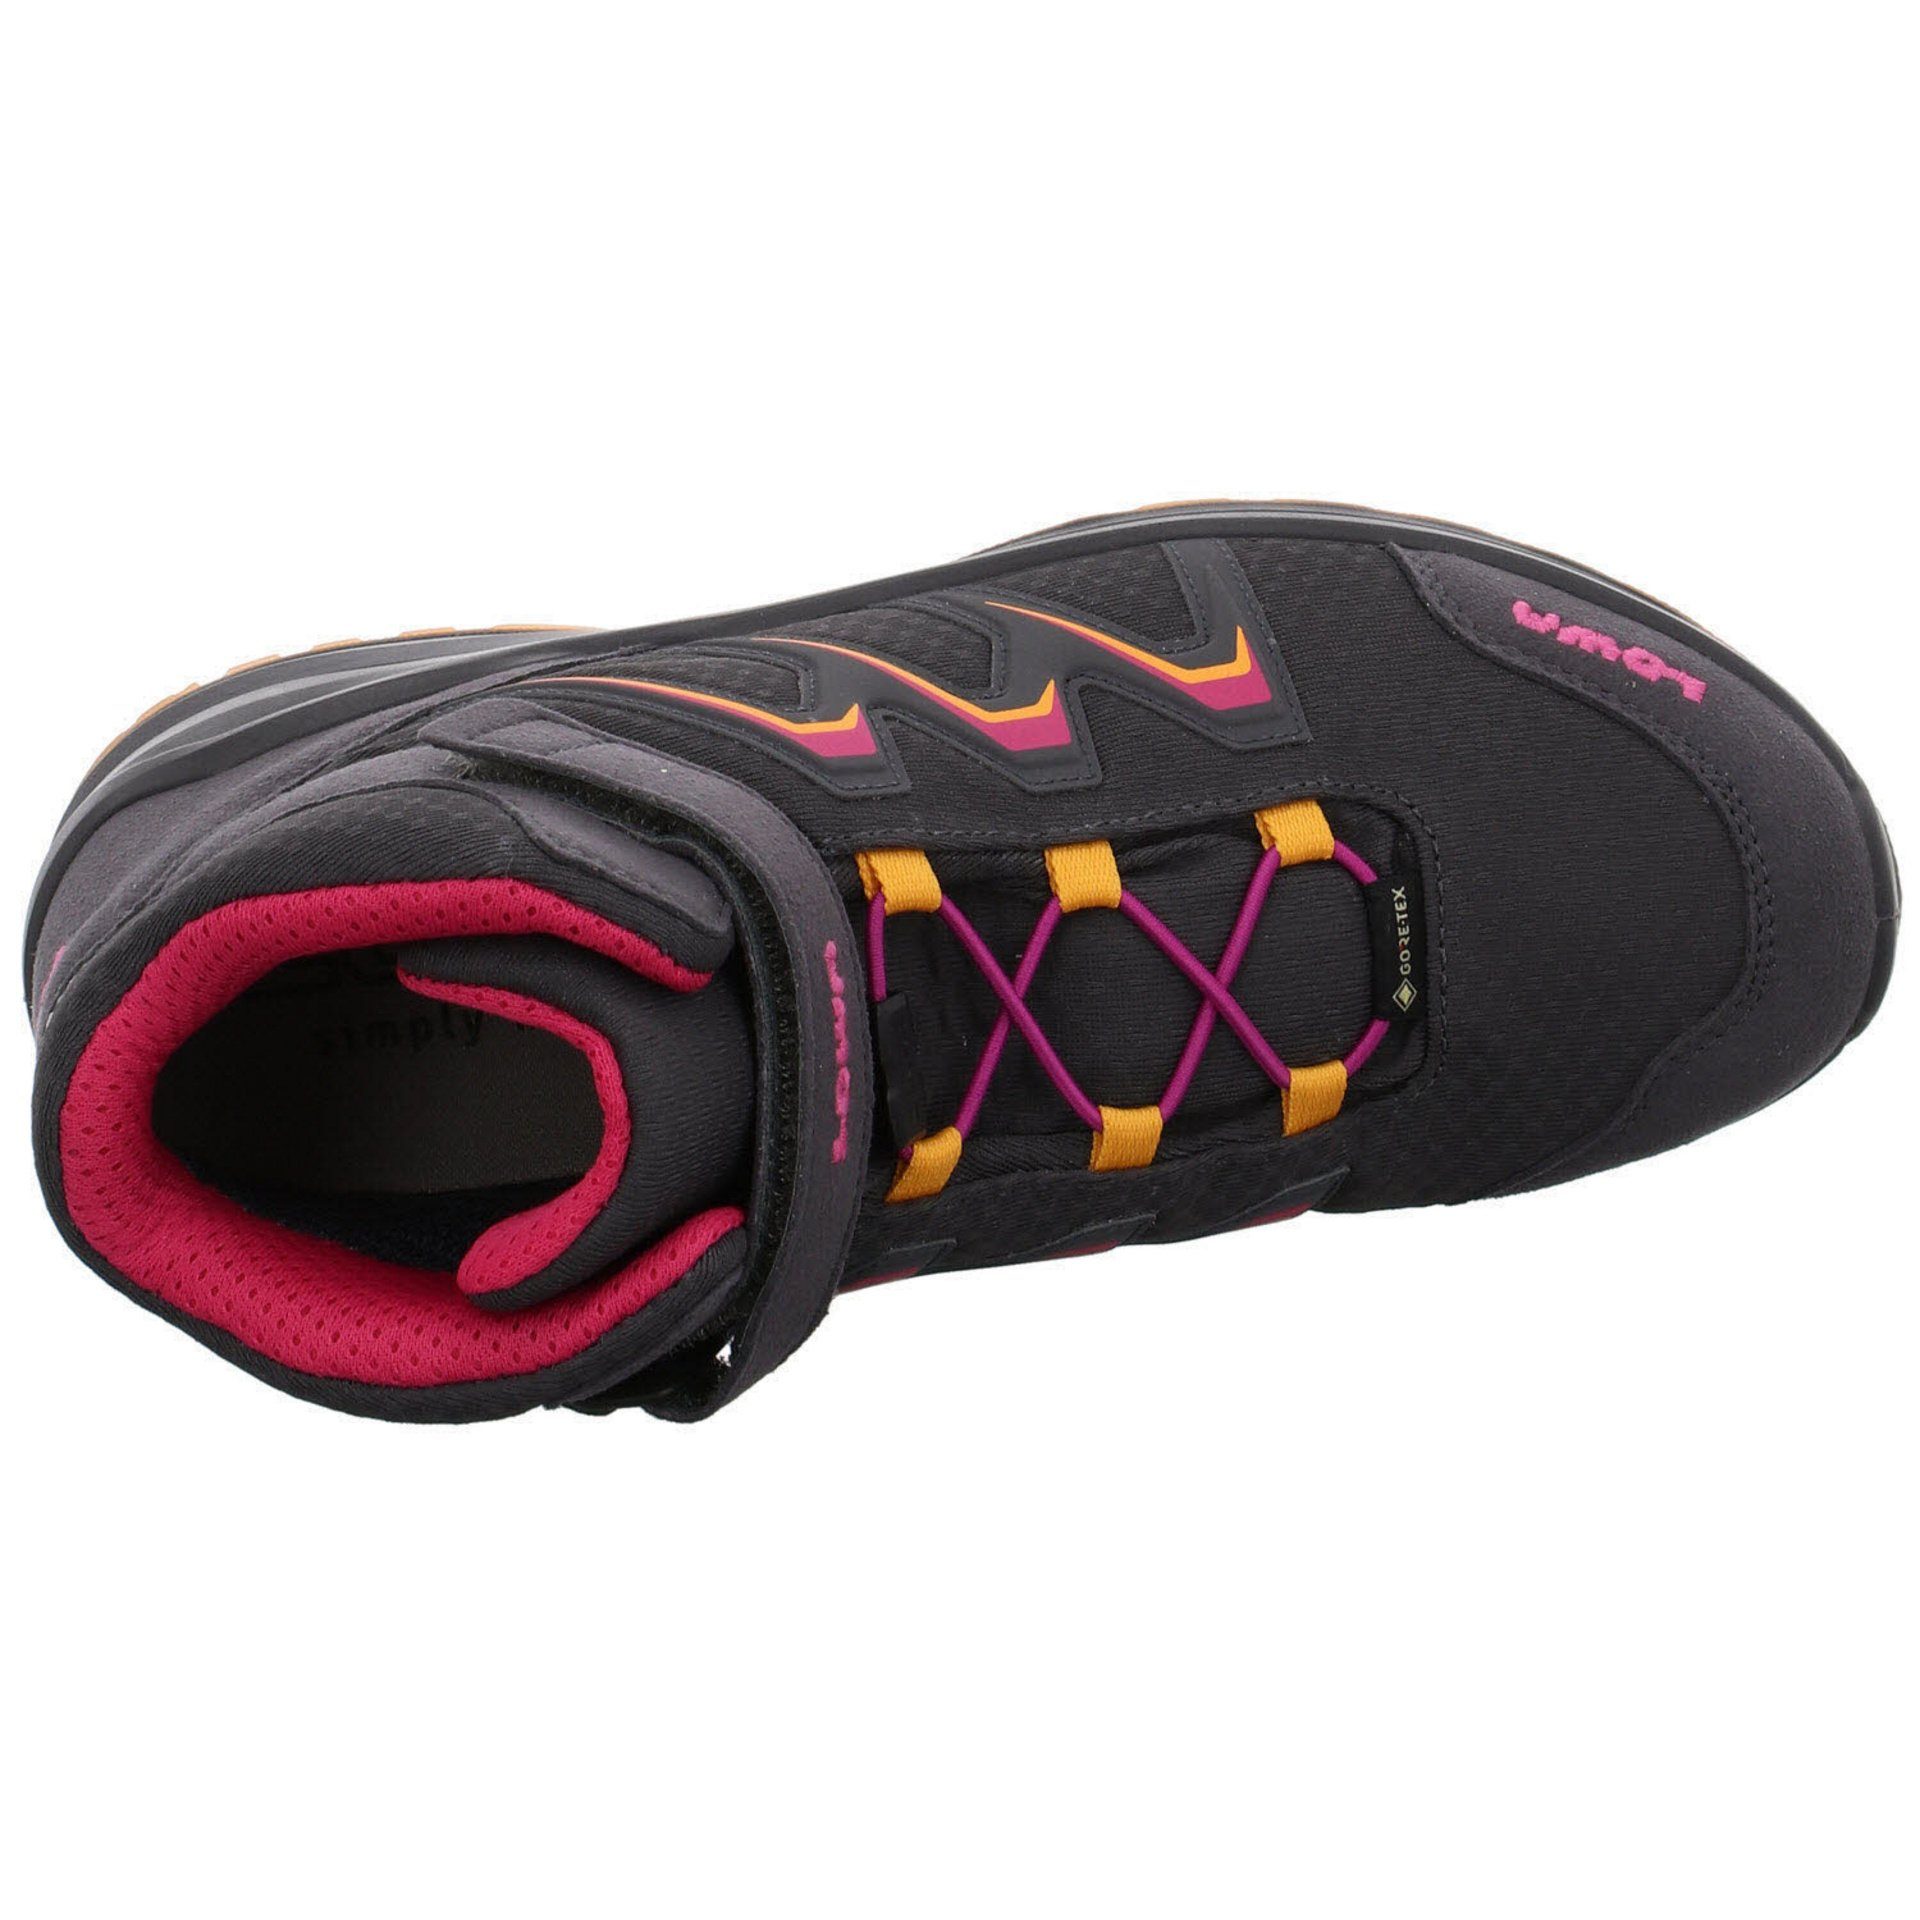 Schuhe Stiefel Maddox Jungen Boots GTX Lowa Warm GRAPHIT/MANDARINE Textil Stiefel